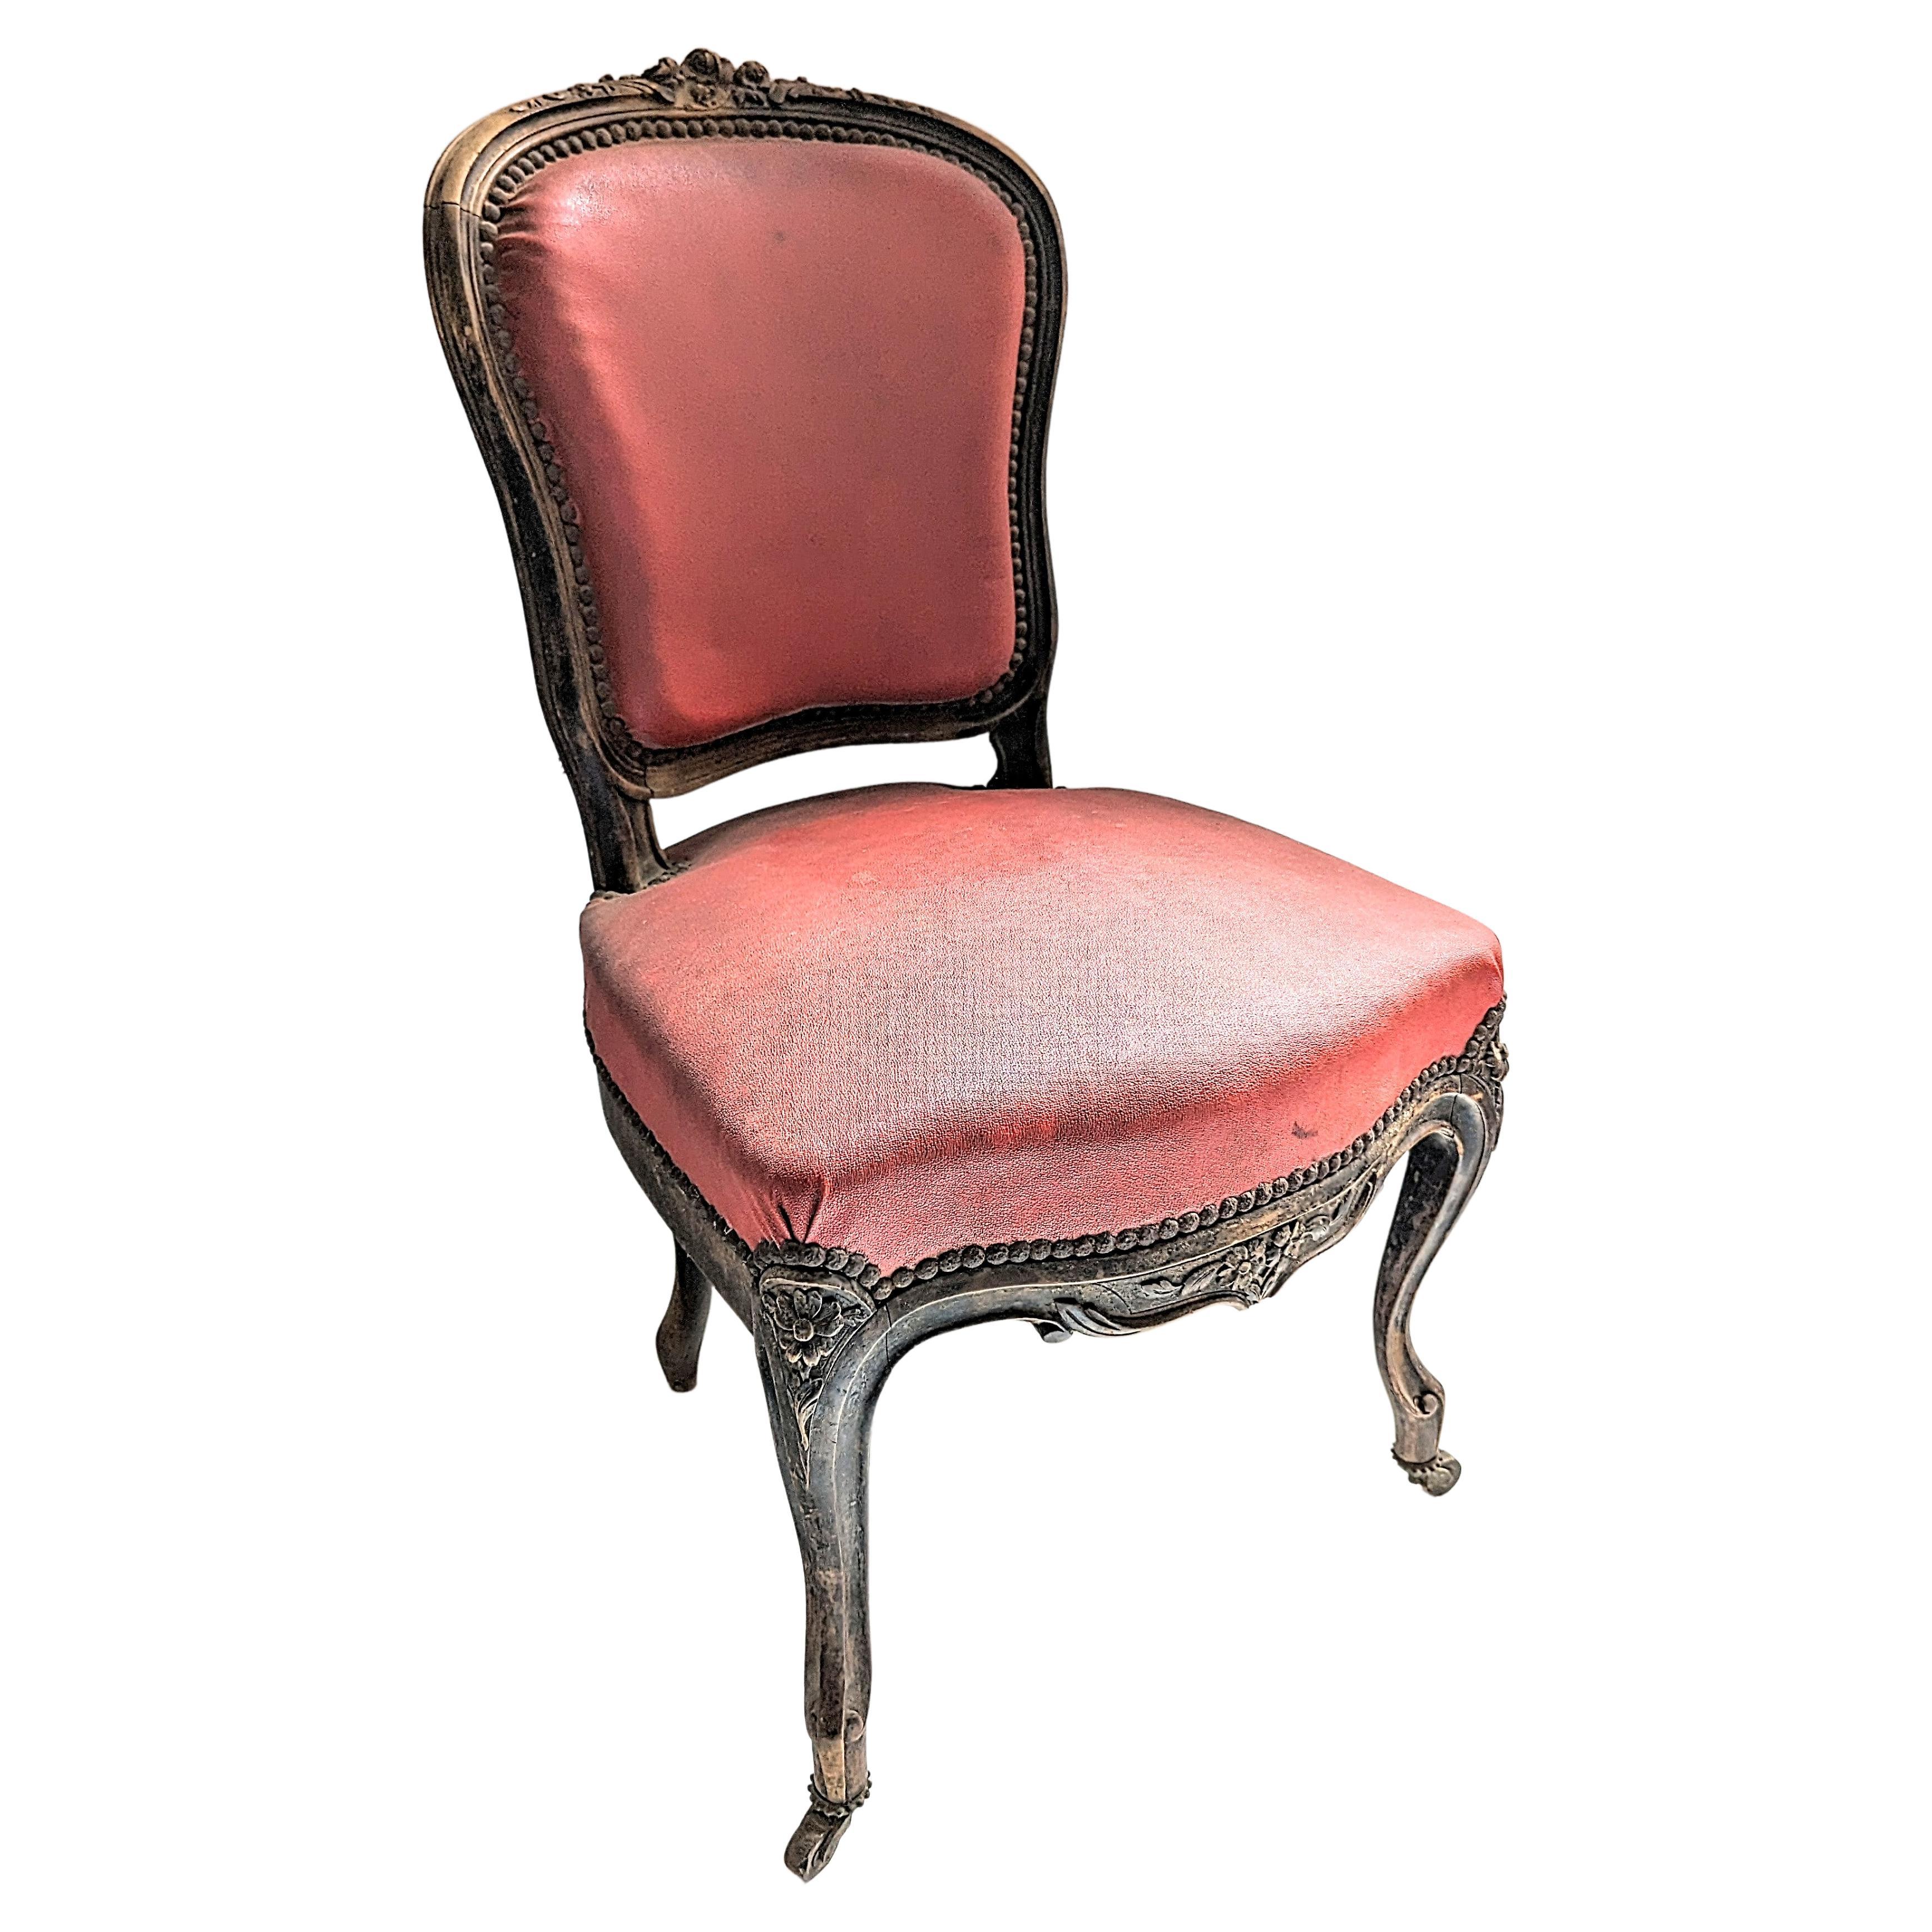 Räumungsverkauf...!  Sie können gerne ein Angebot machen...!

Außergewöhnliches Lois XV Fünfteiliges Wohnzimmerset Frankreich, um 1760-80 von Jean-Baptiste-Claude Sené, Maître. Besteht aus 5 Teilen: 1 Loveseat (Sofa, Canape) 2 Sessel und 2 Stühle.